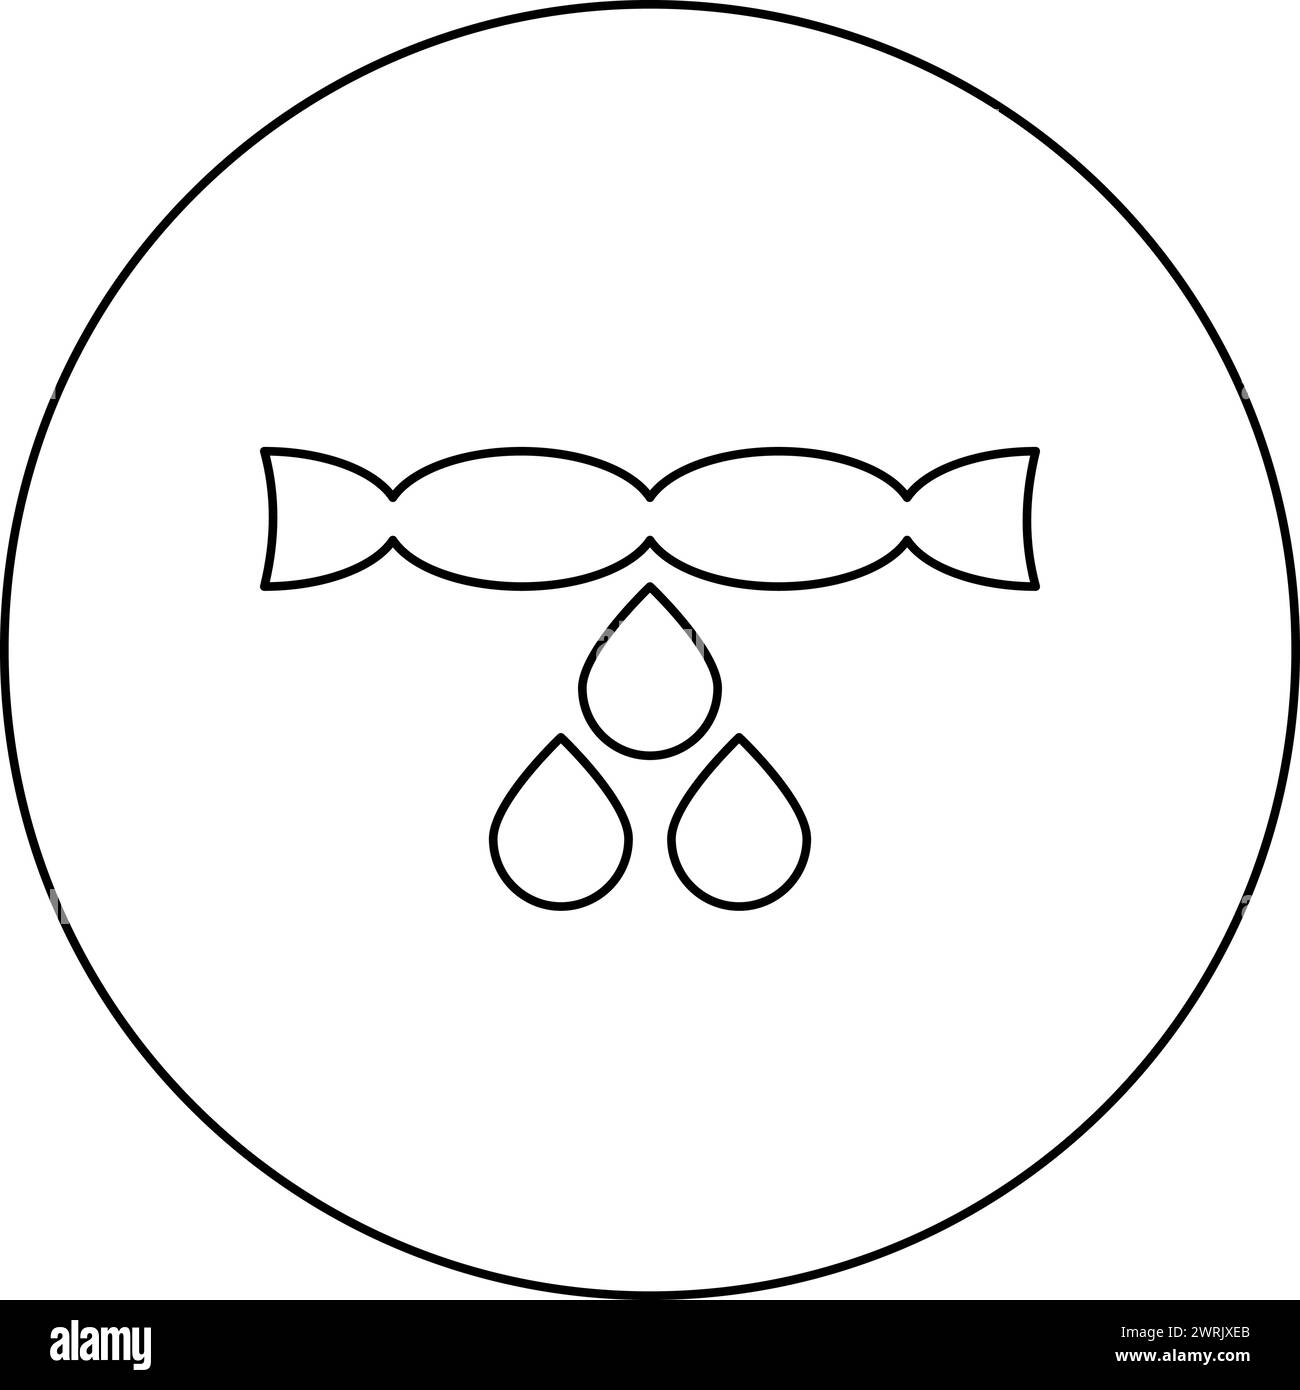 Asciugatura degli indumenti rimozione della strizzatura gocciolamento gocciolamento goccia di bucato icona concettuale in cerchio di colore nero illustrazione vettoriale linea di contorno dell'immagine Illustrazione Vettoriale